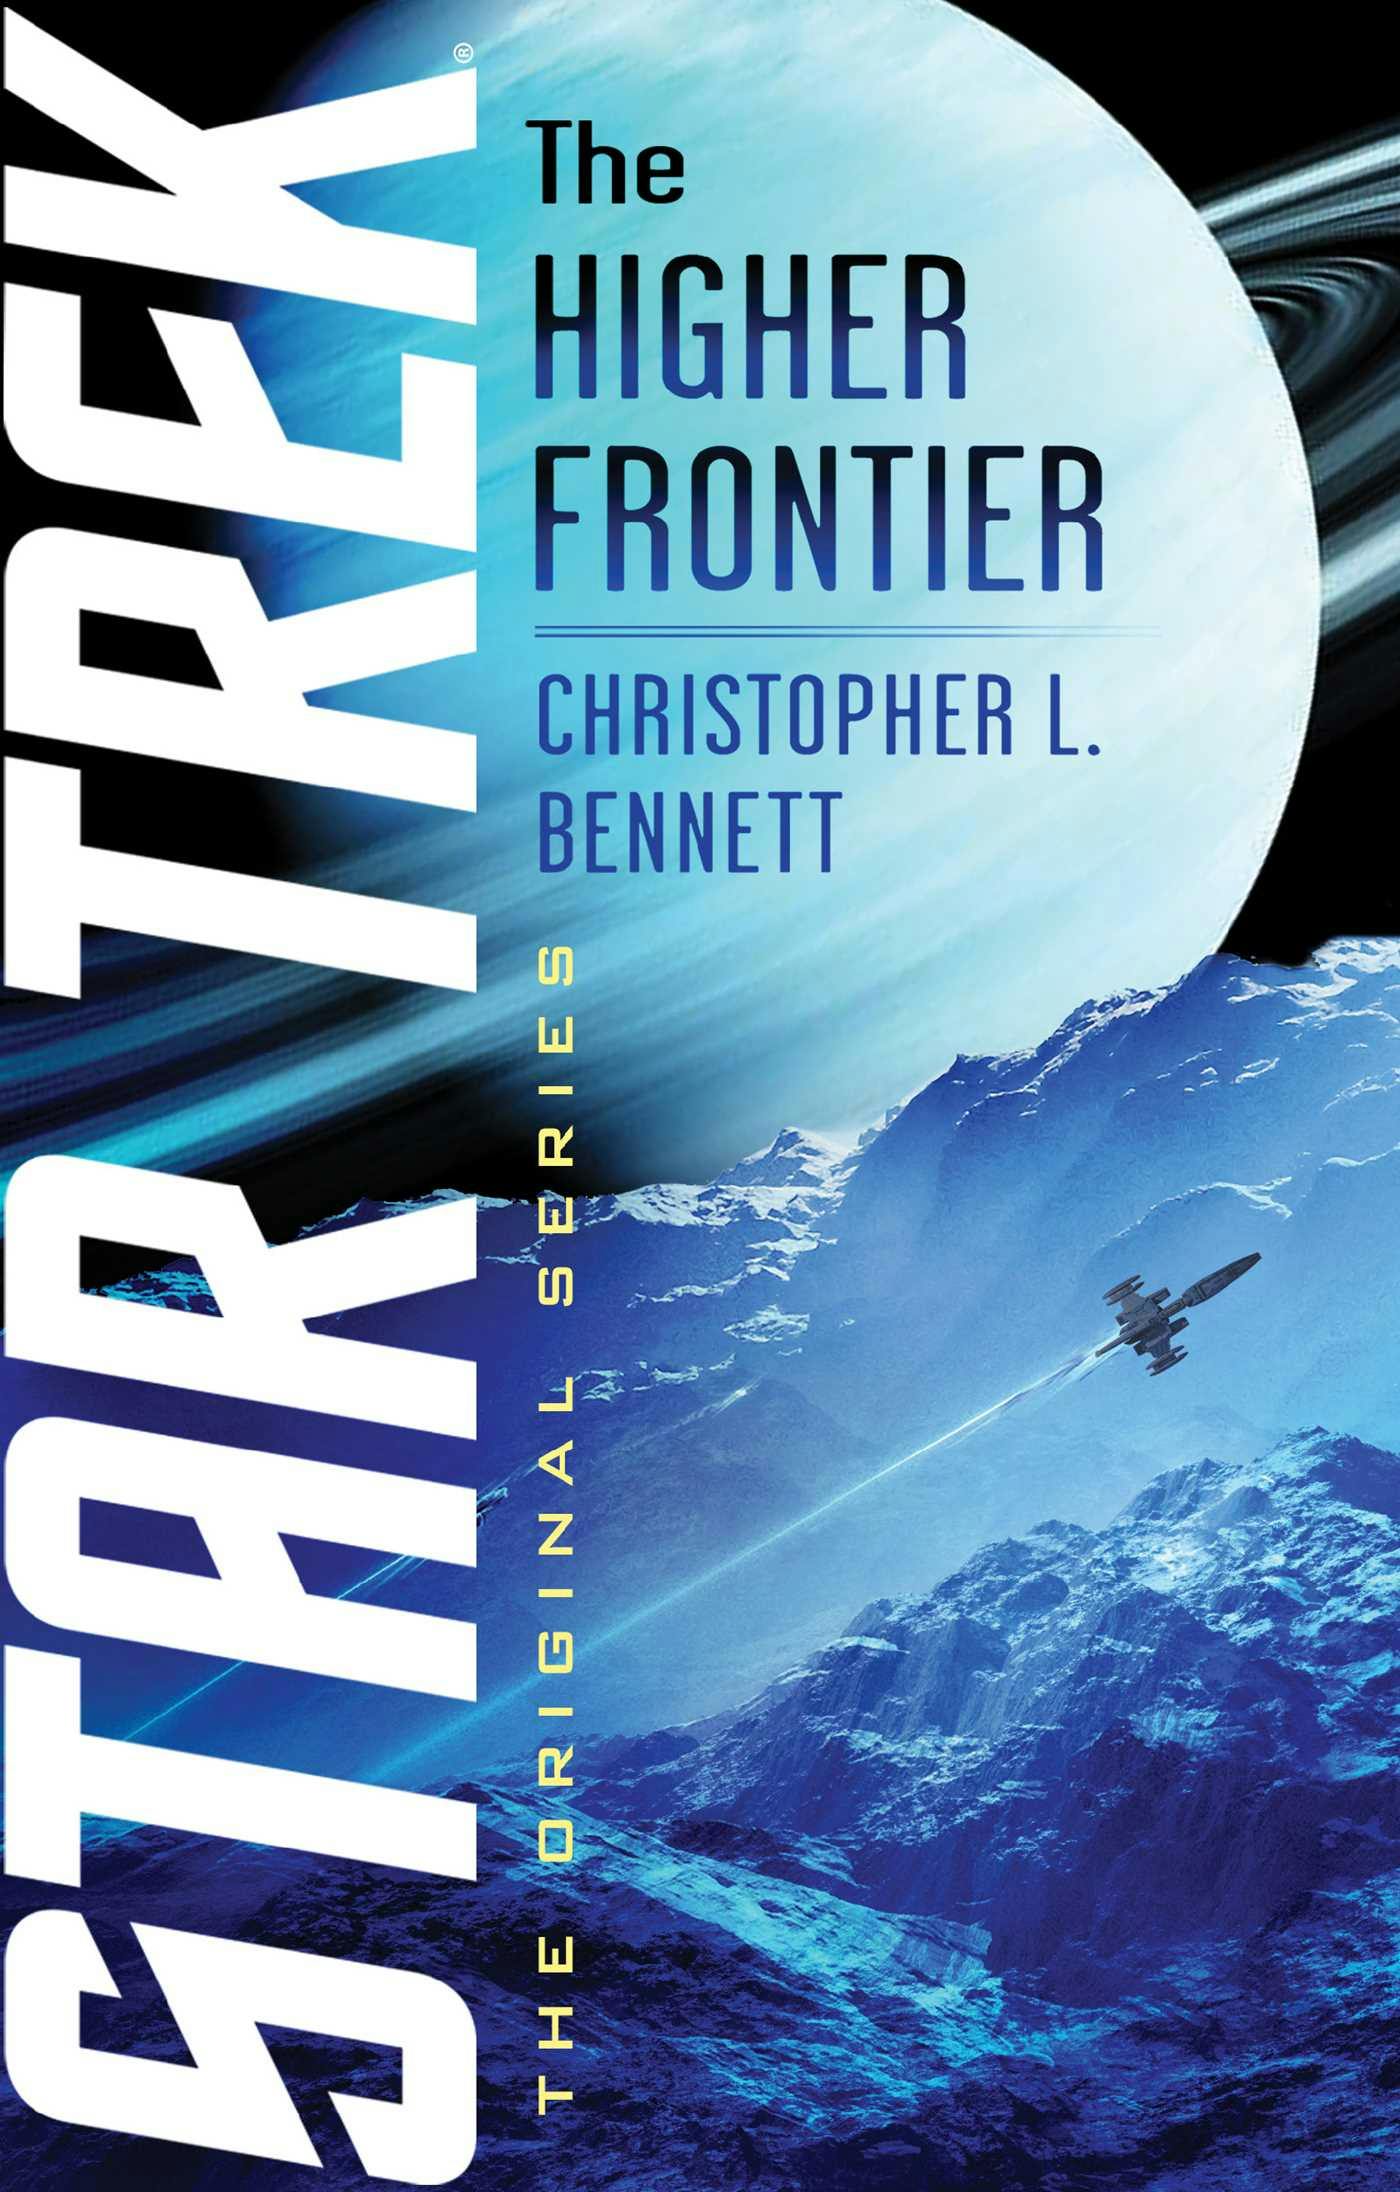 Star Trek: The Higher Frontier